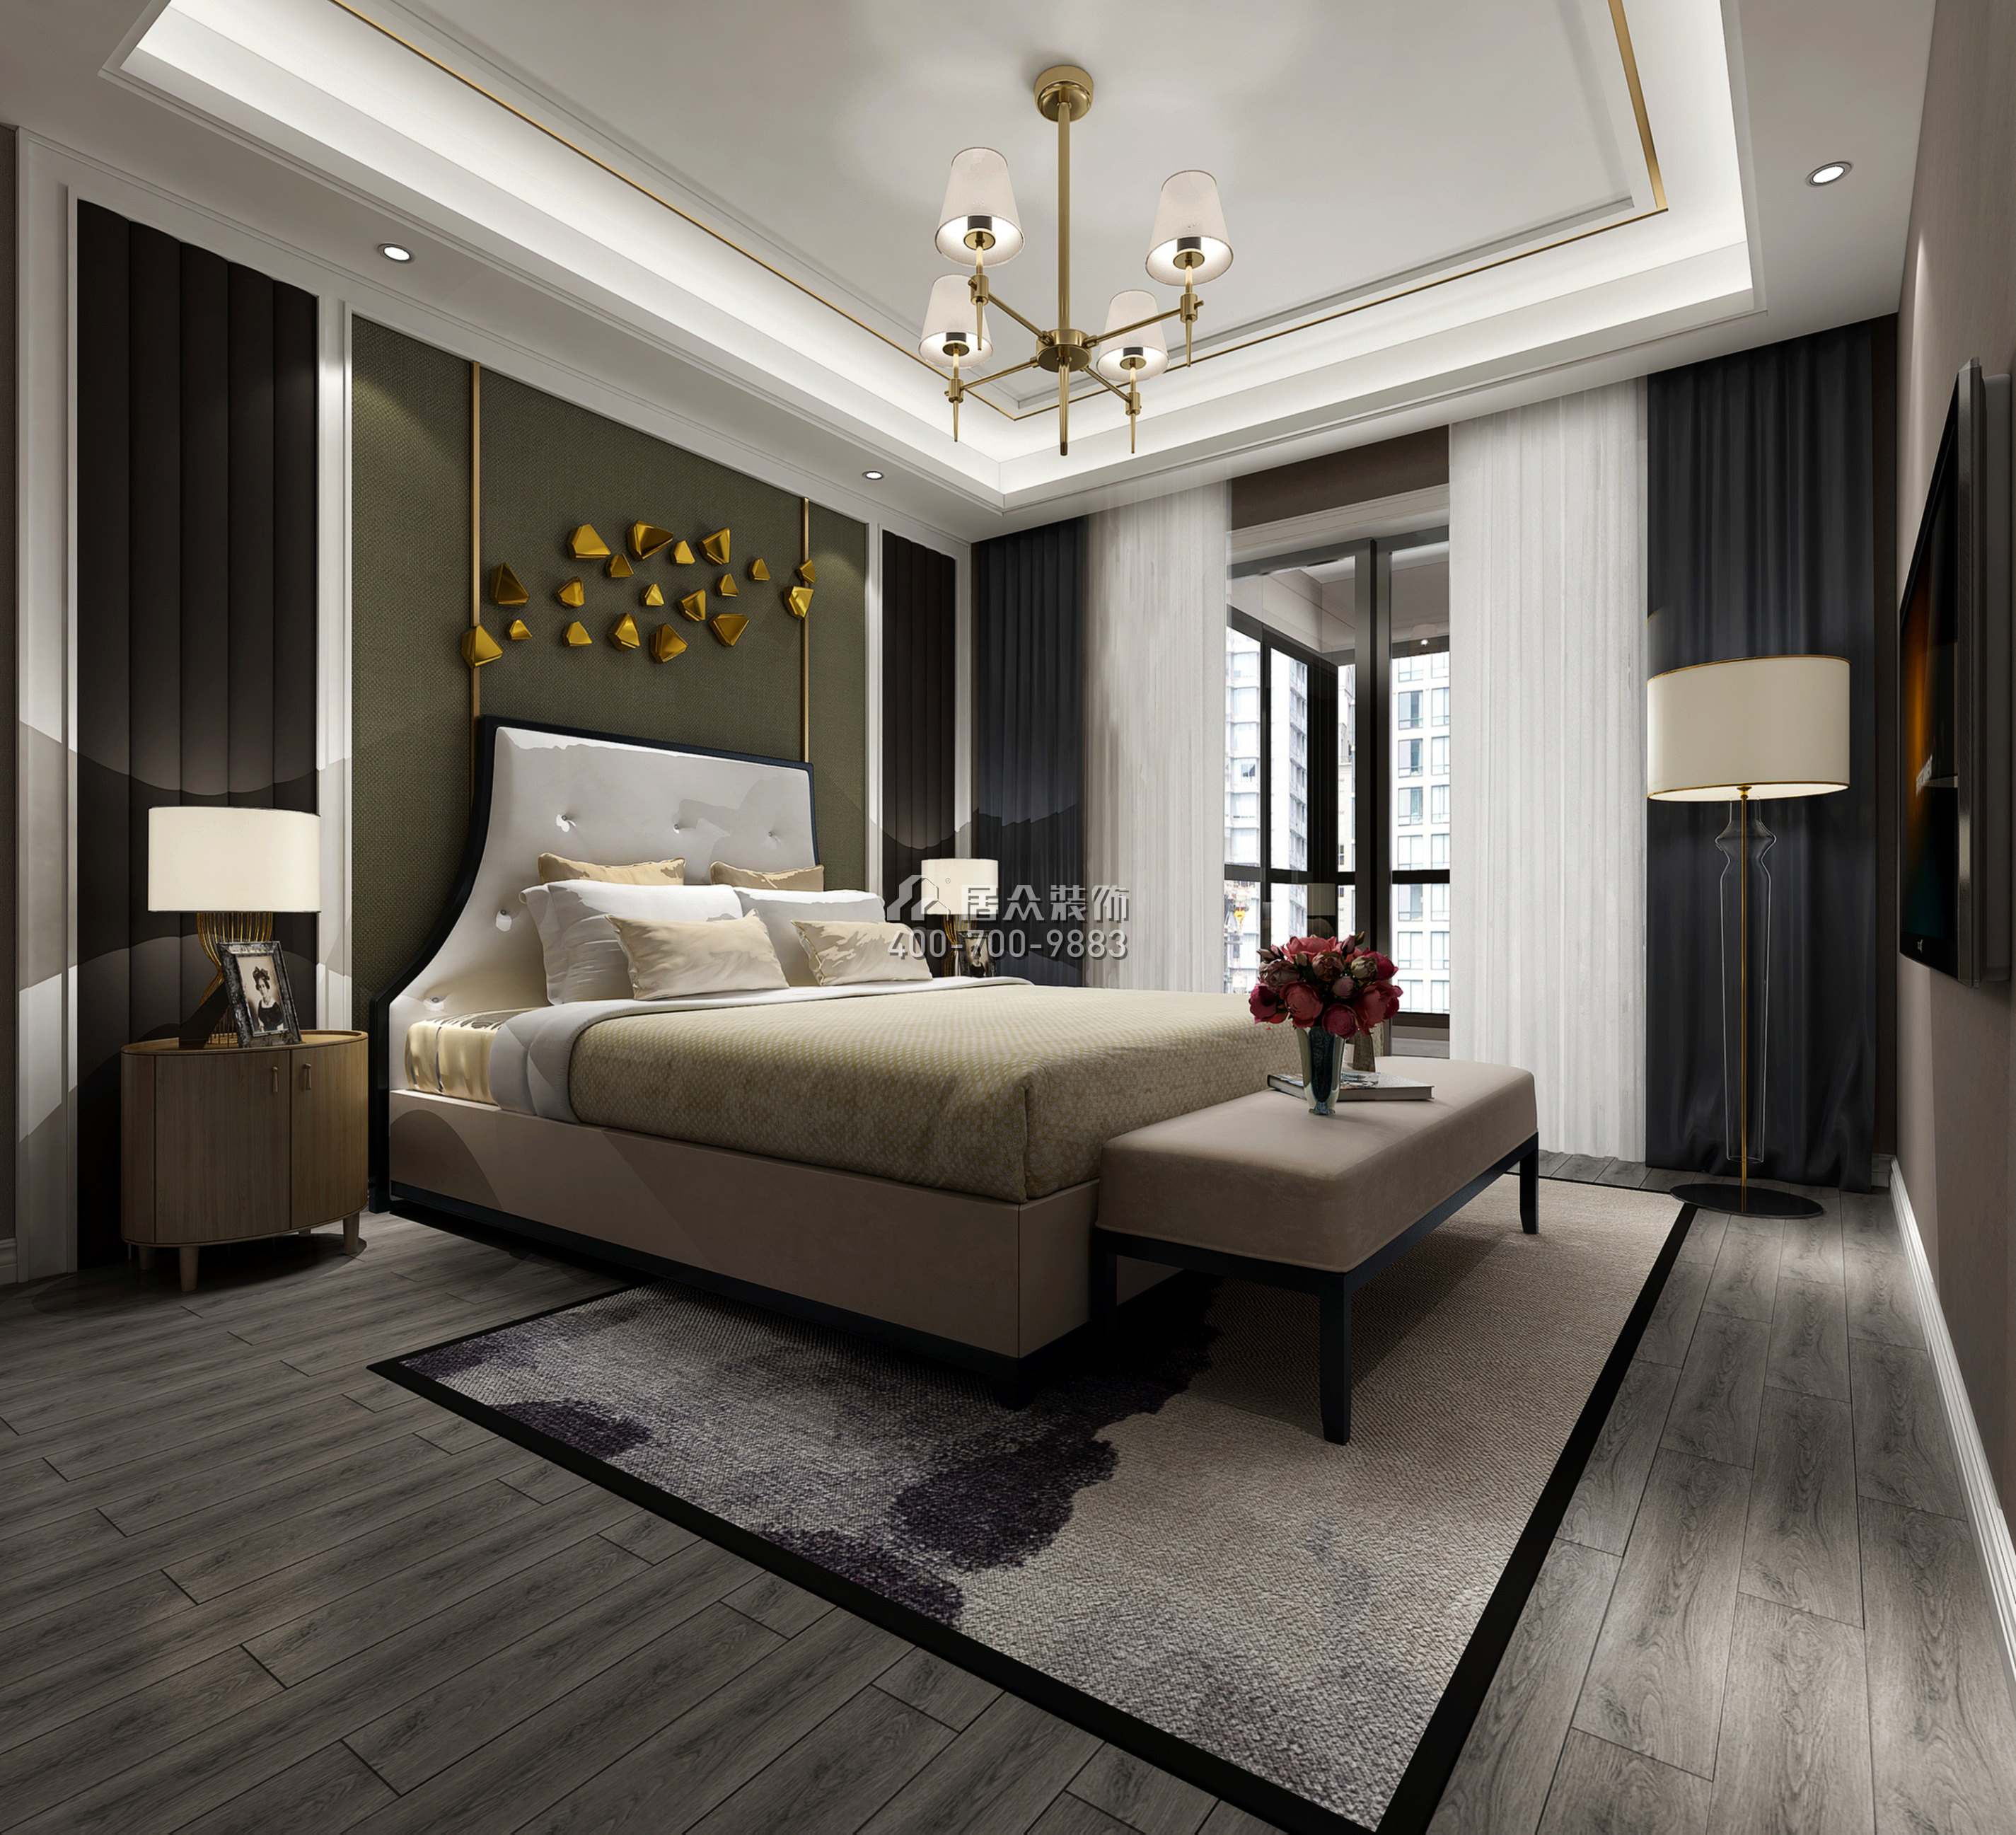 颐安都会中央花园一期125平方米现代简约风格平层户型卧室装修效果图